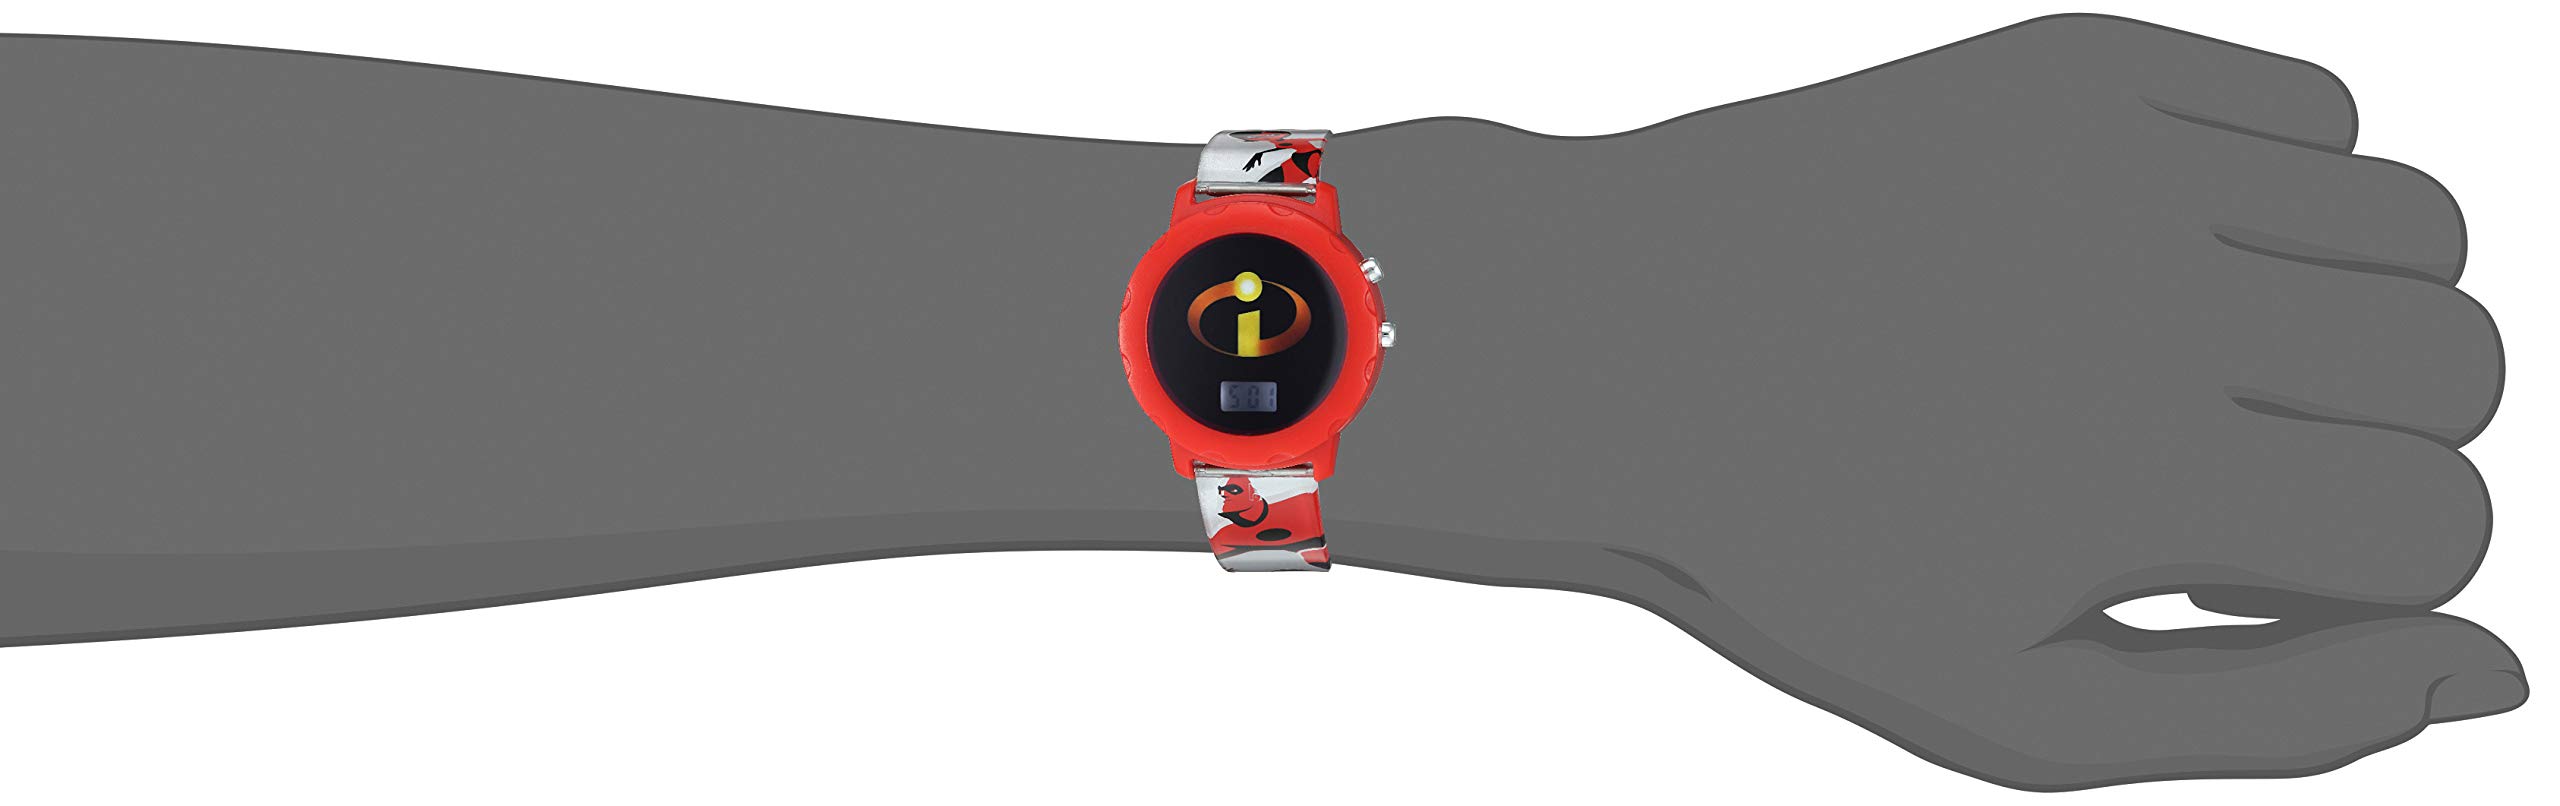 Disney Kids' INM4001 Digital Display Analog Quartz Grey Watch